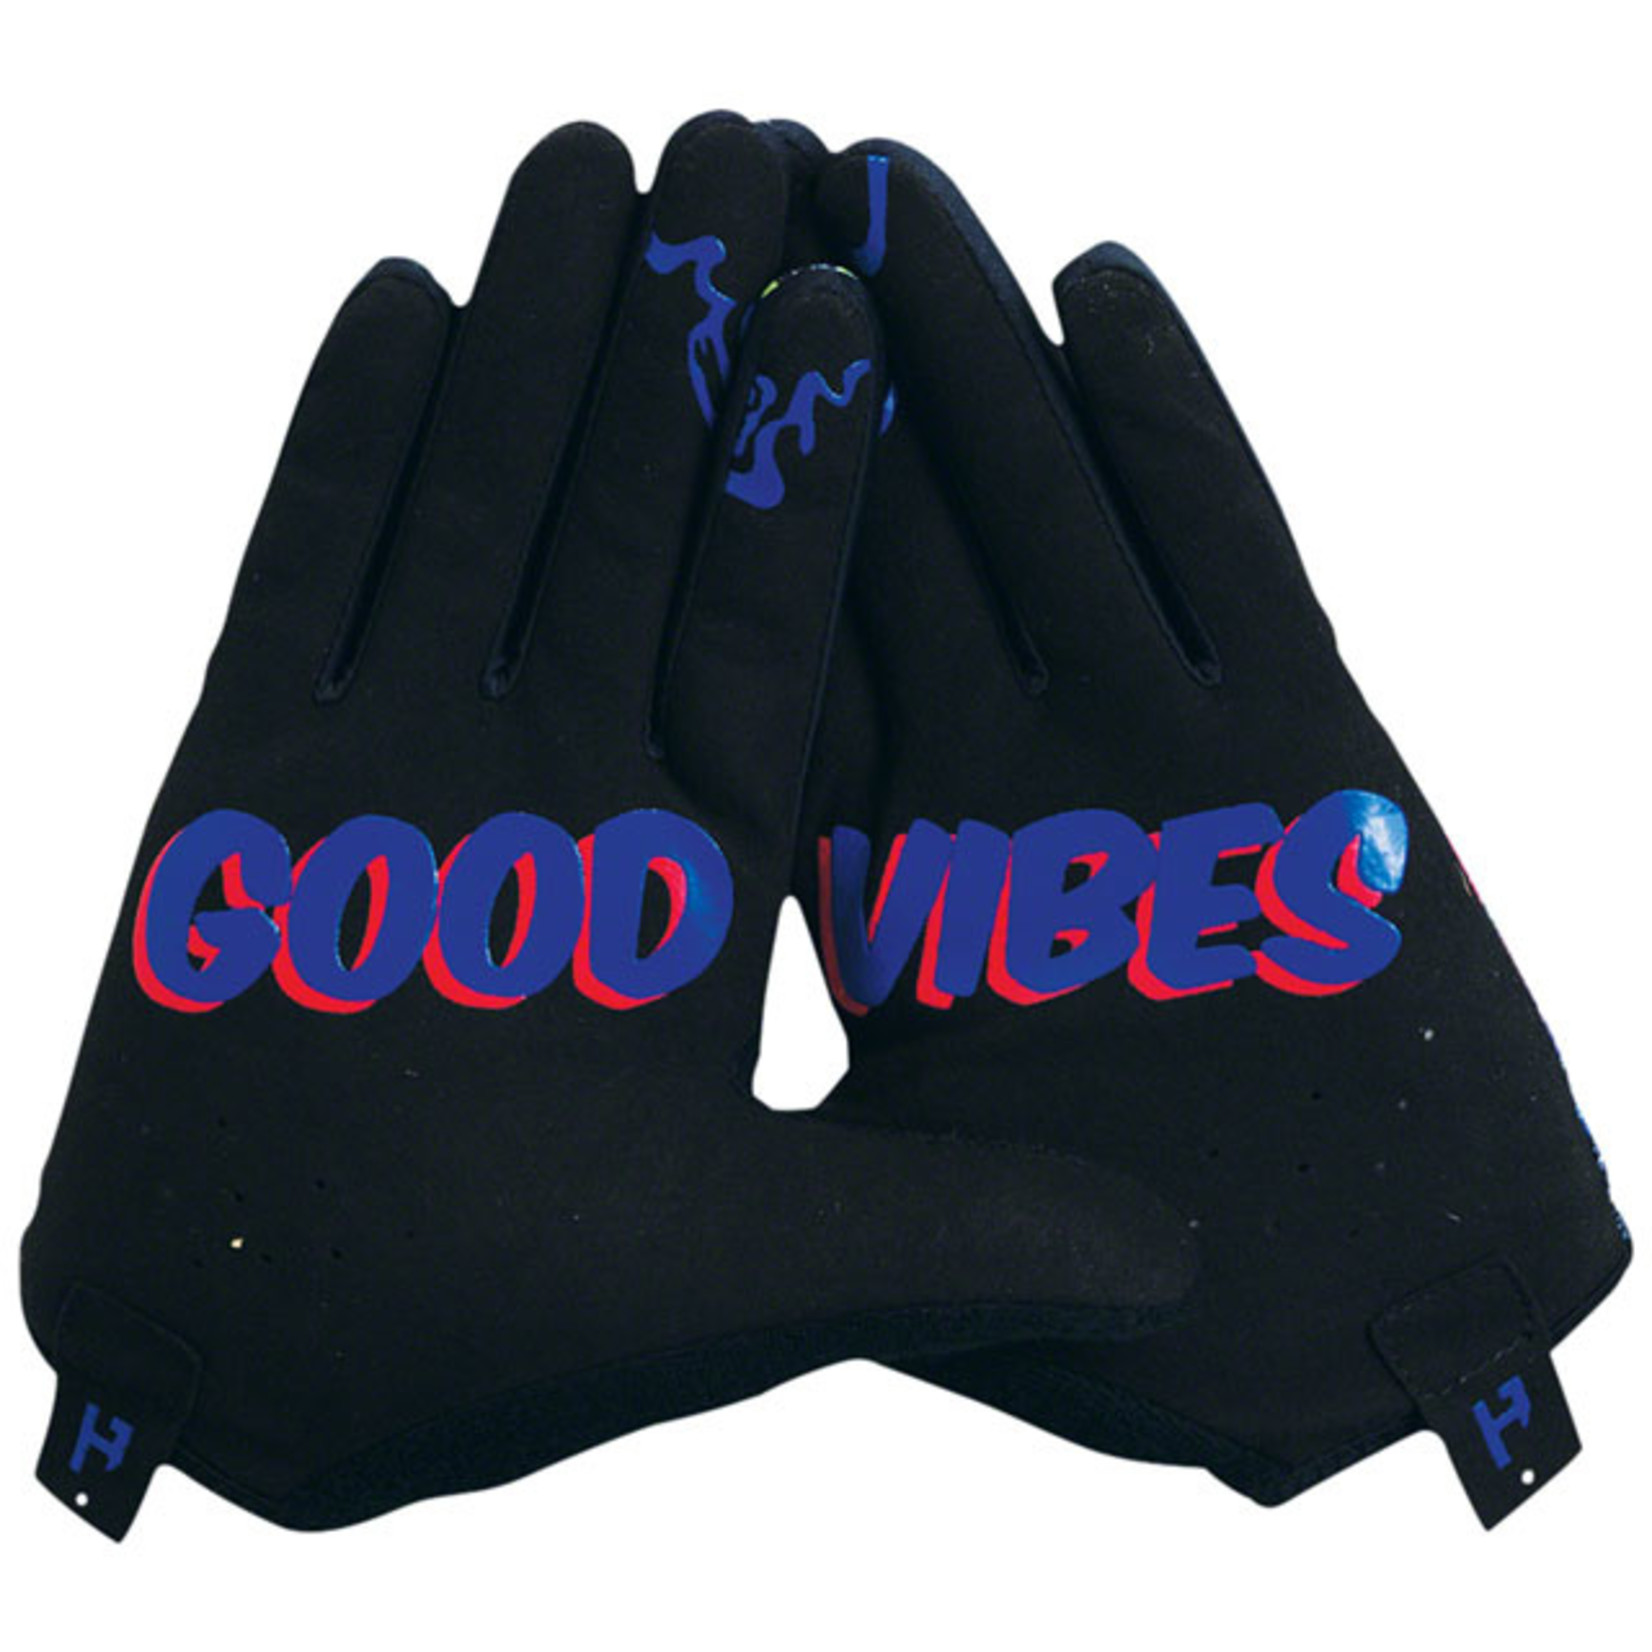 Handup HandUp Most Days Gloves - Funky Fade Full Finger Small